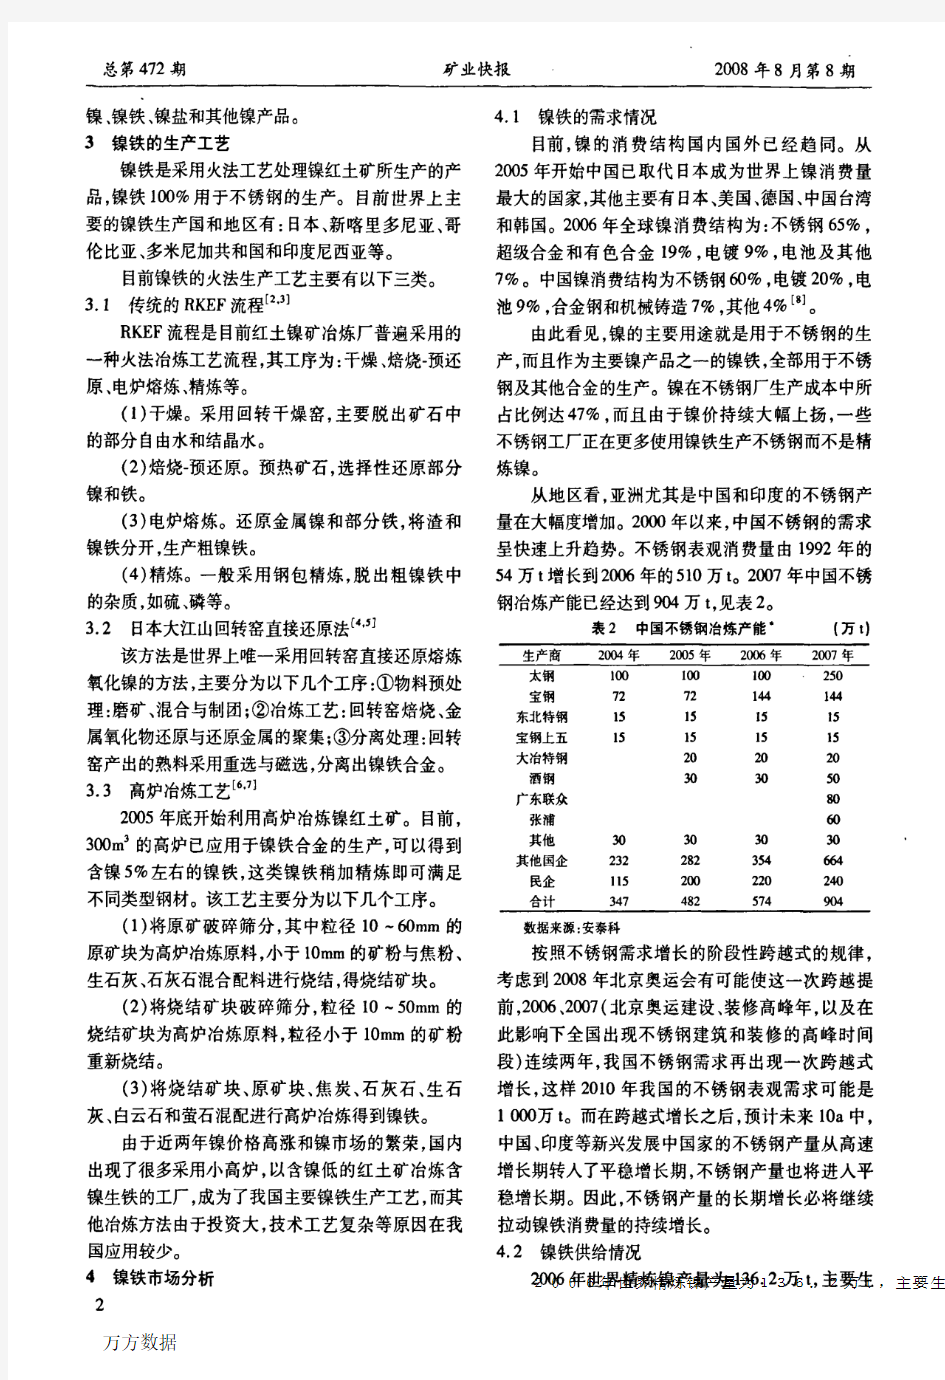 中国镍铁的发展现状、市场分析与展望